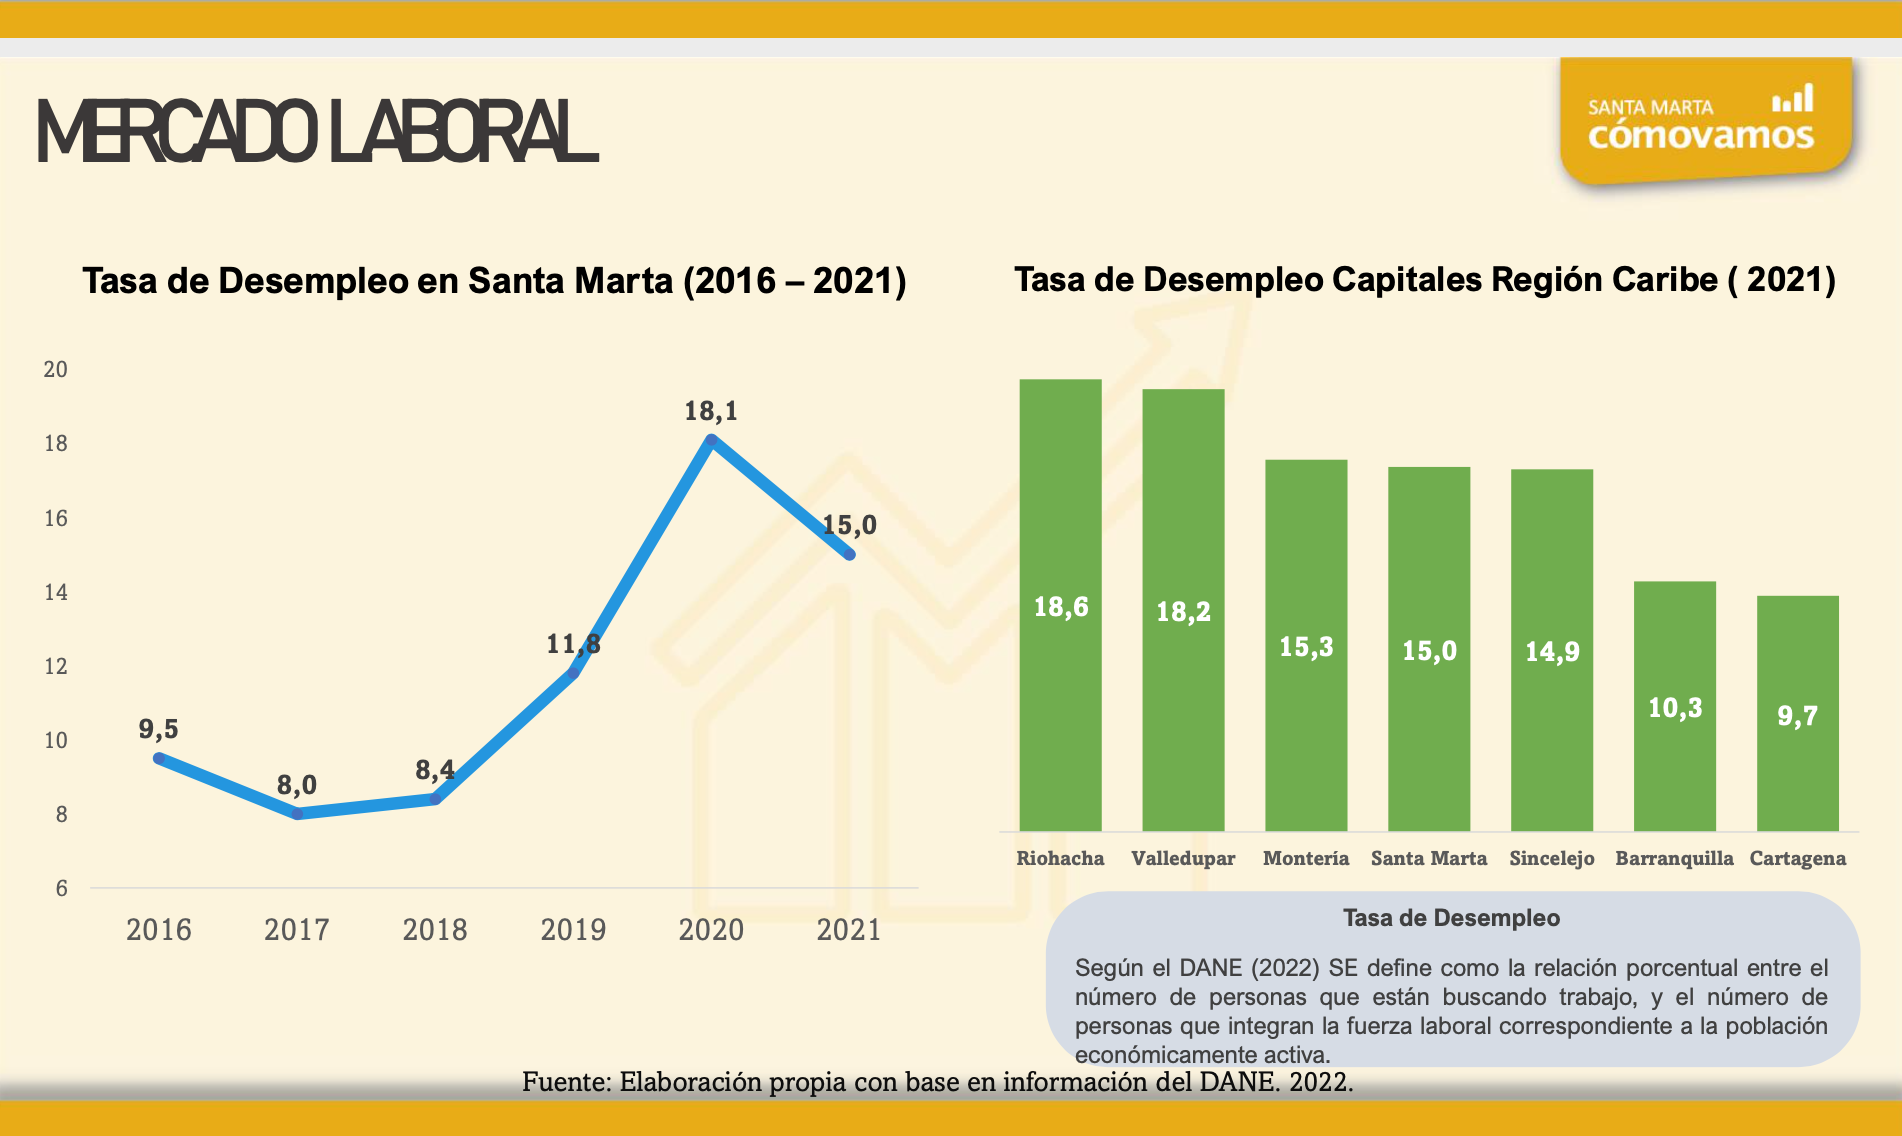 Santa Marta sigue entregando positivos indicadores en la lucha contra el desempleo